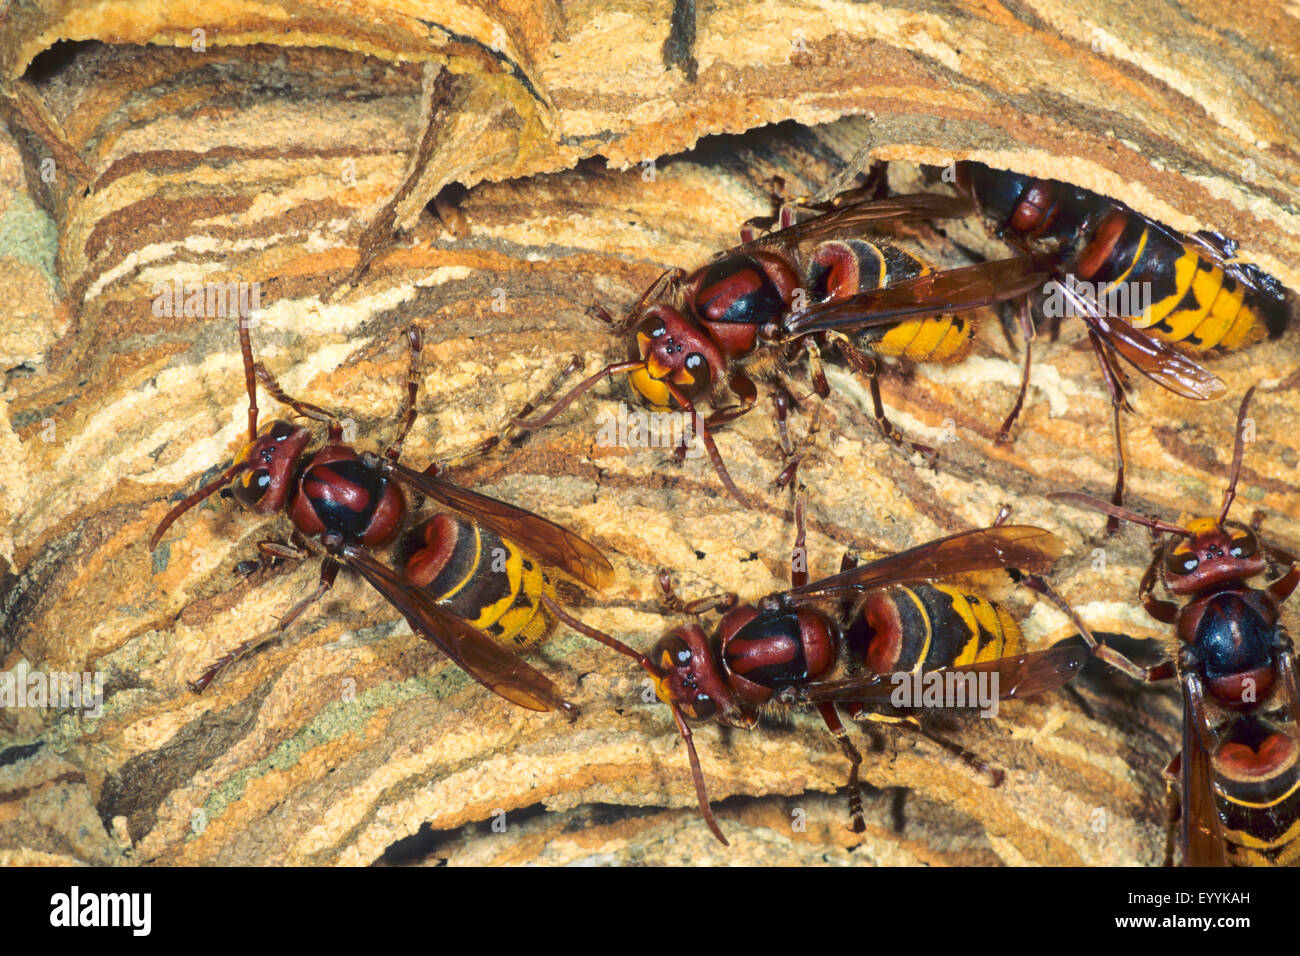 Hornet, brown hornet, Unión hornet (Vespa crabro), hornets en un avispón nido, Alemania Foto de stock